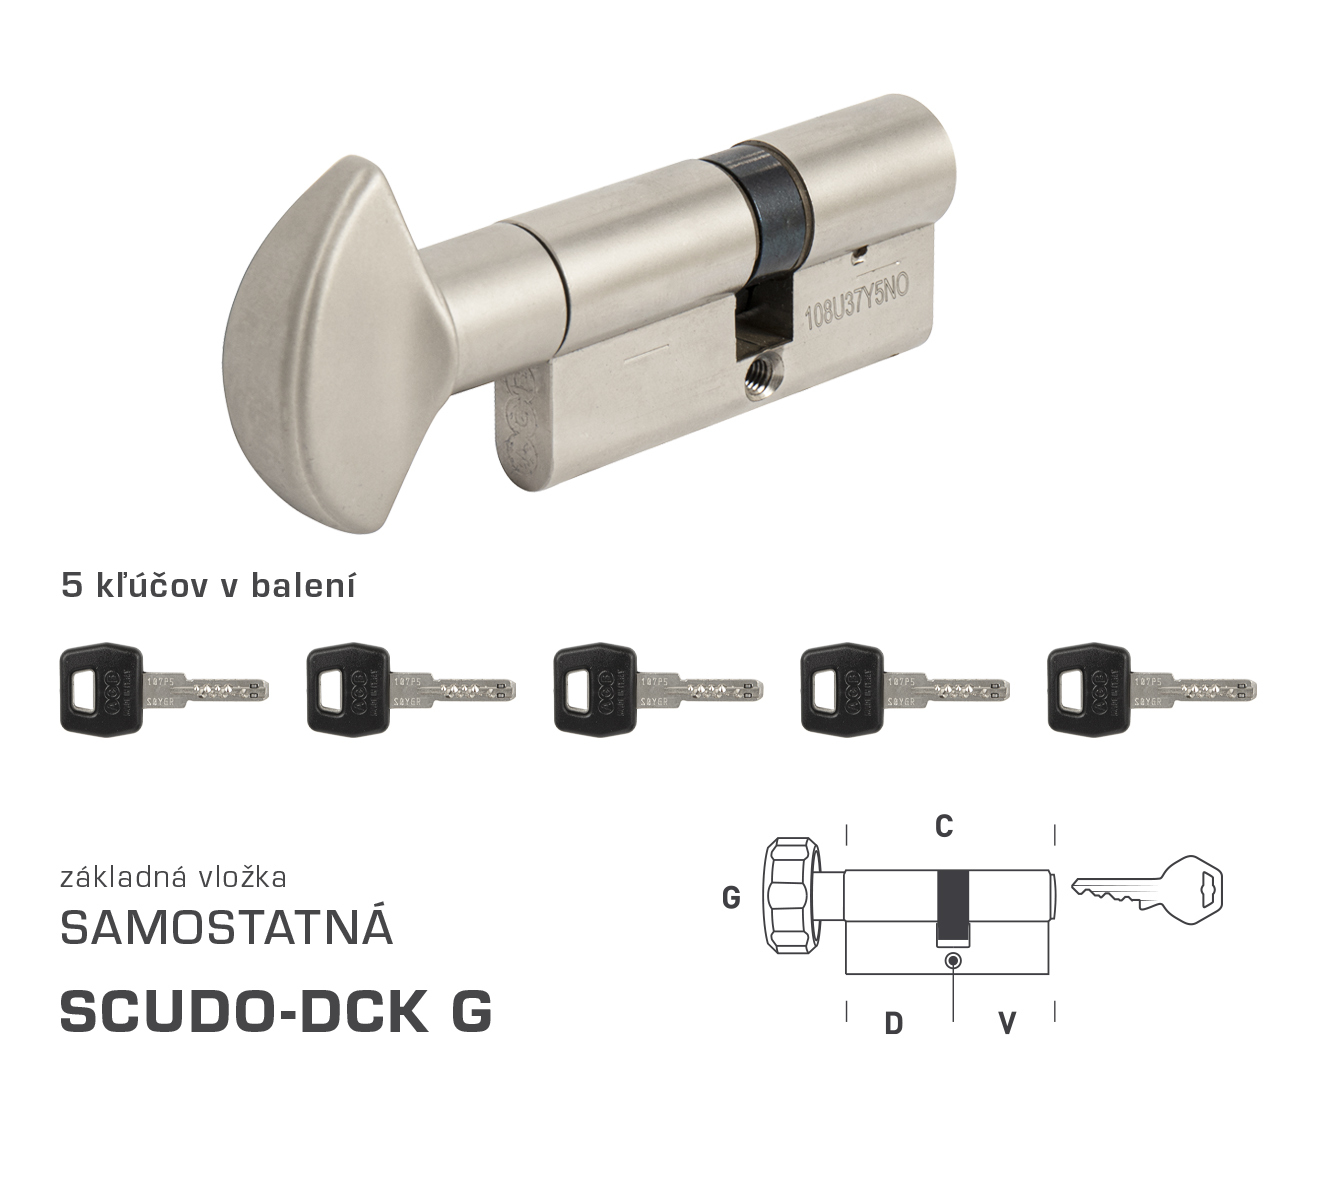 E-shop AGB - Vložka SCUDO DCK S G obojstranná cylindrická vložka 35+30 mm + 5x kľúč